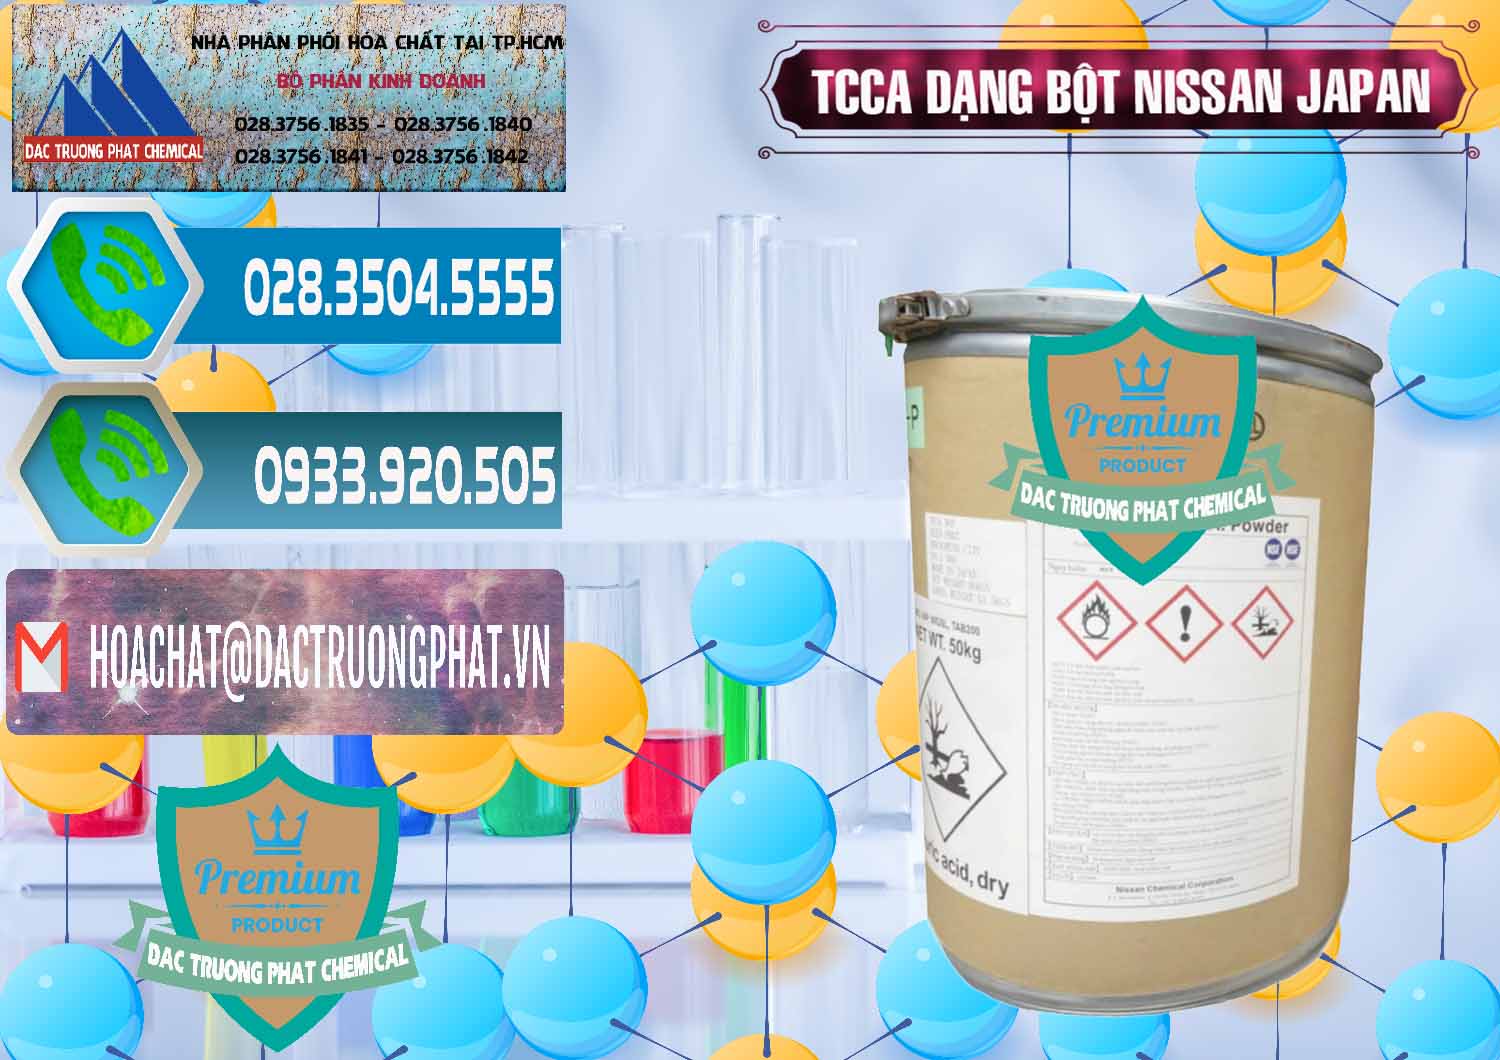 Kinh doanh & bán TCCA - Acid Trichloroisocyanuric 90% Dạng Bột Nissan Nhật Bản Japan - 0375 - Chuyên kinh doanh & phân phối hóa chất tại TP.HCM - congtyhoachat.net